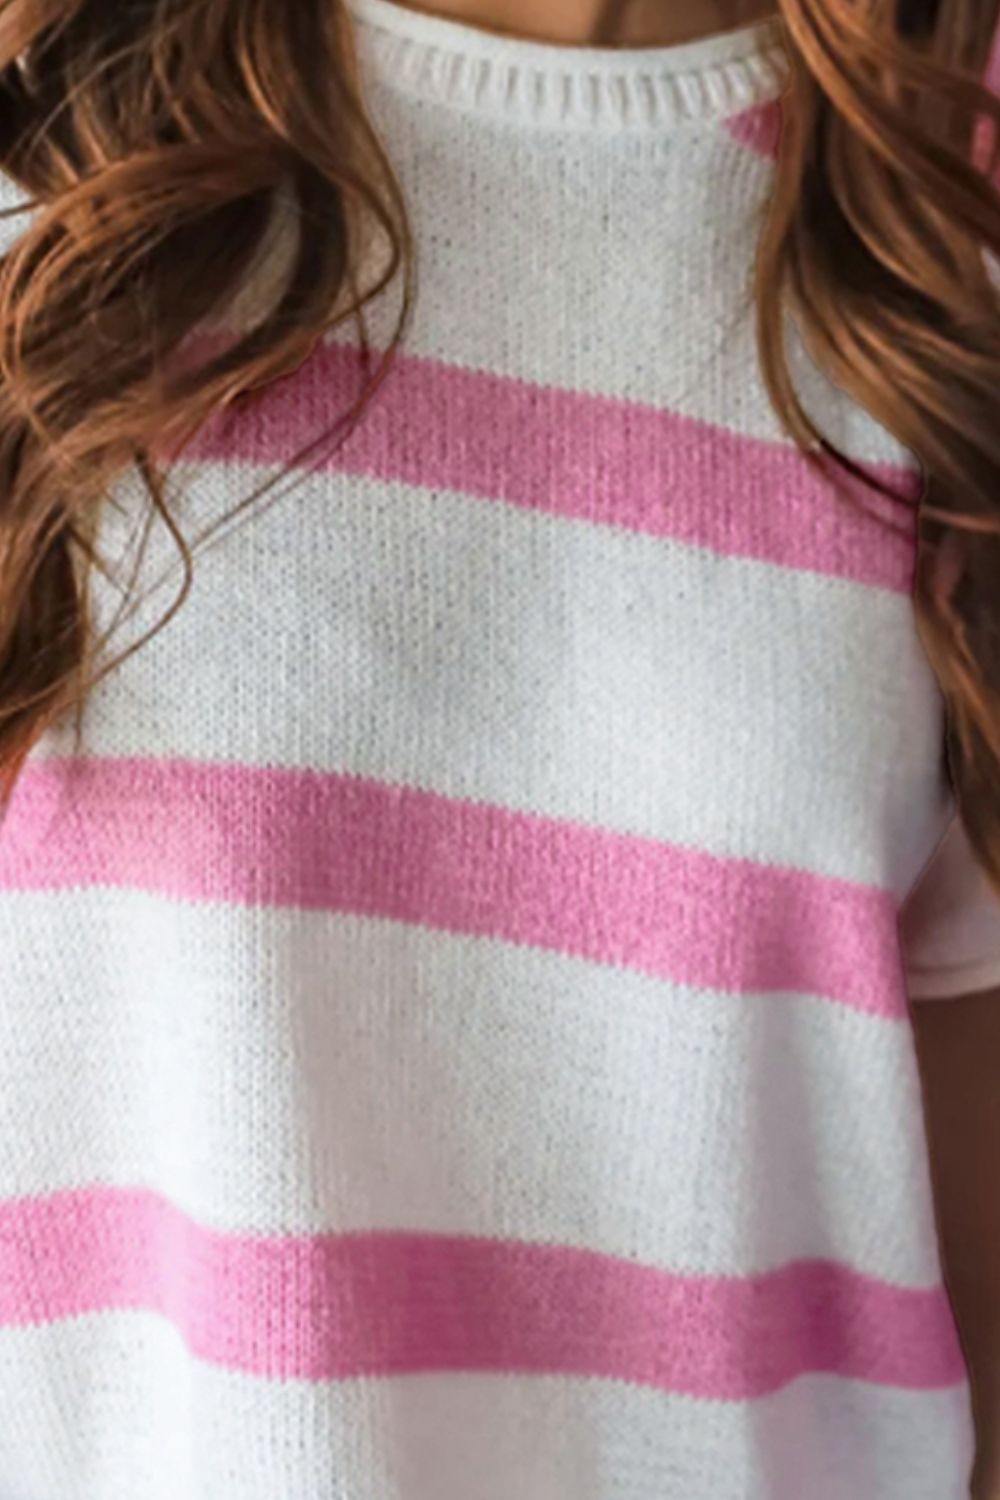 Cara Striped Knit Blouse